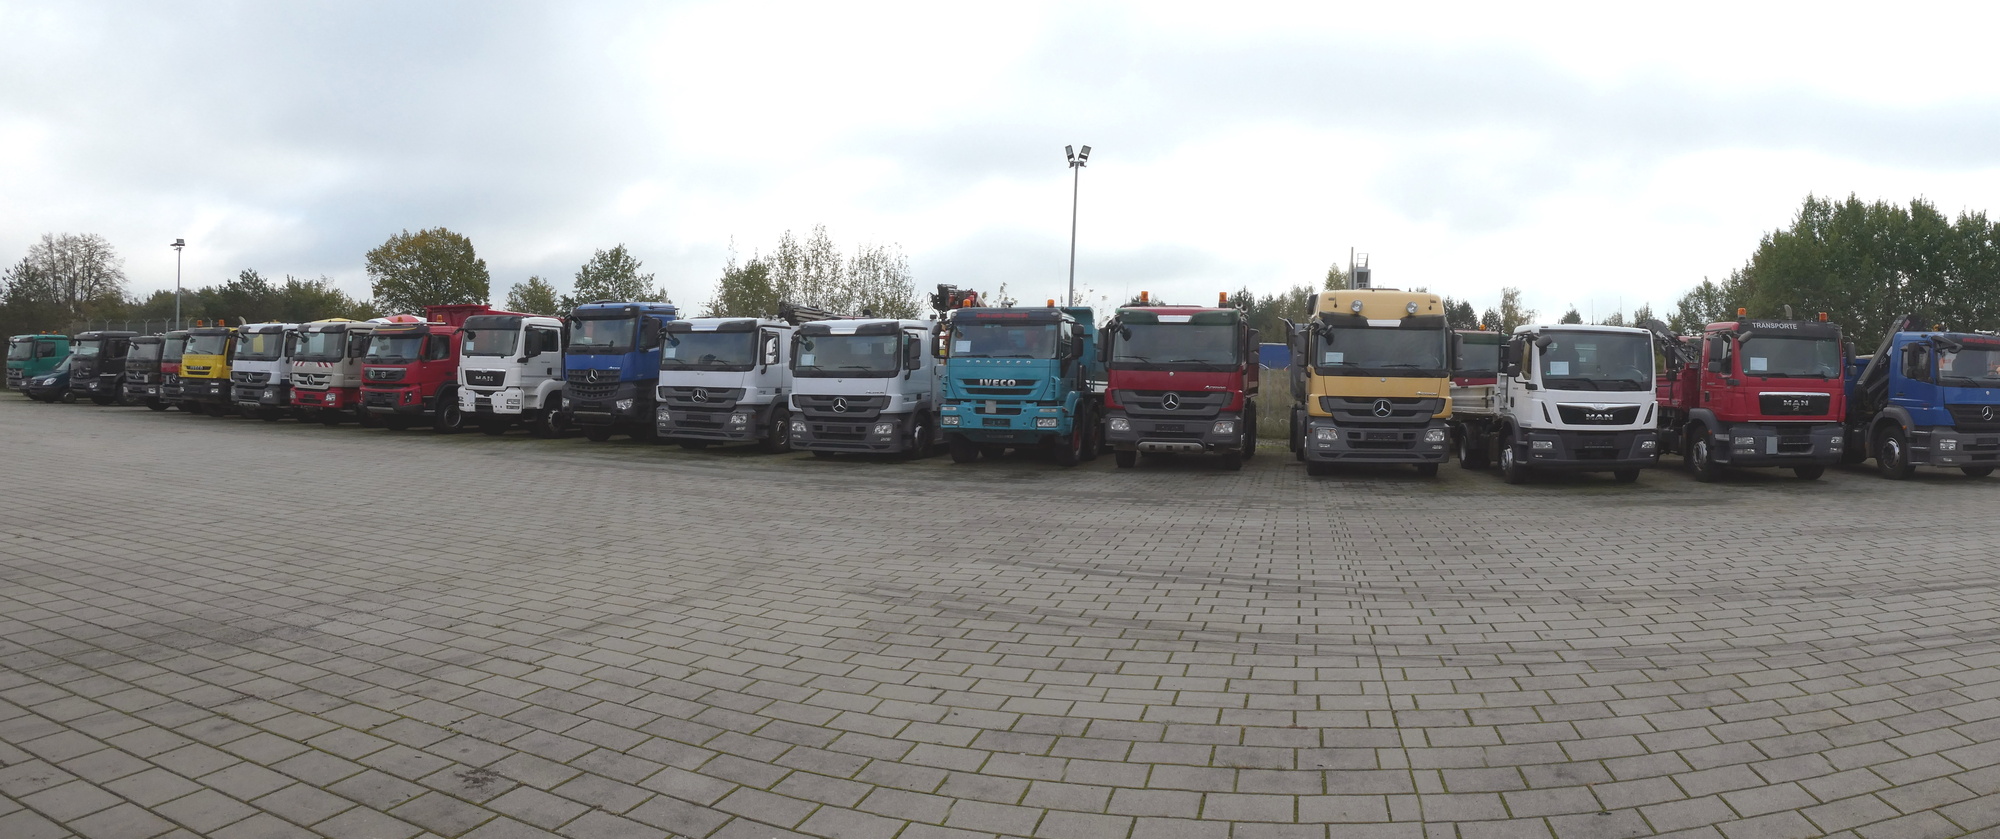 Henze Truck GmbH undefined: billede 1